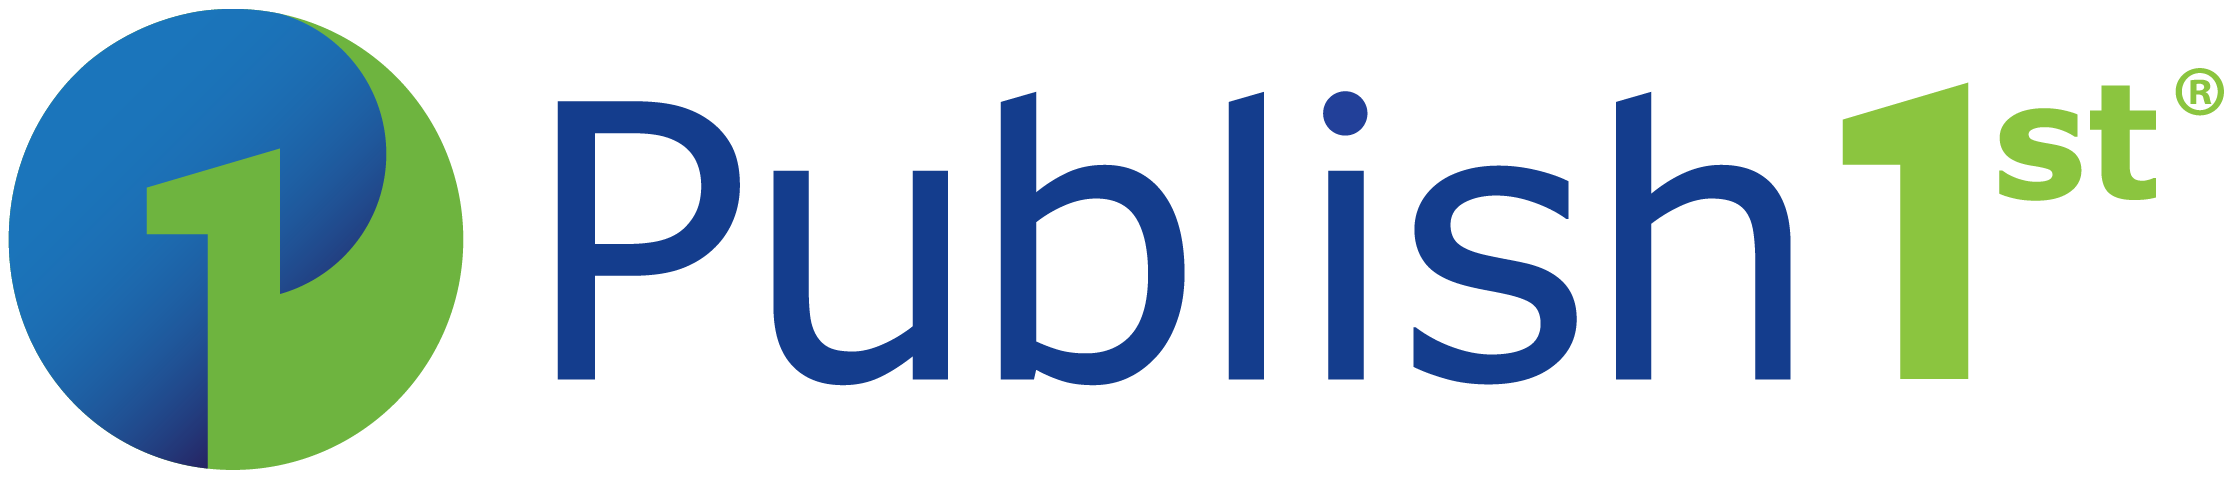 Publish 1st logo